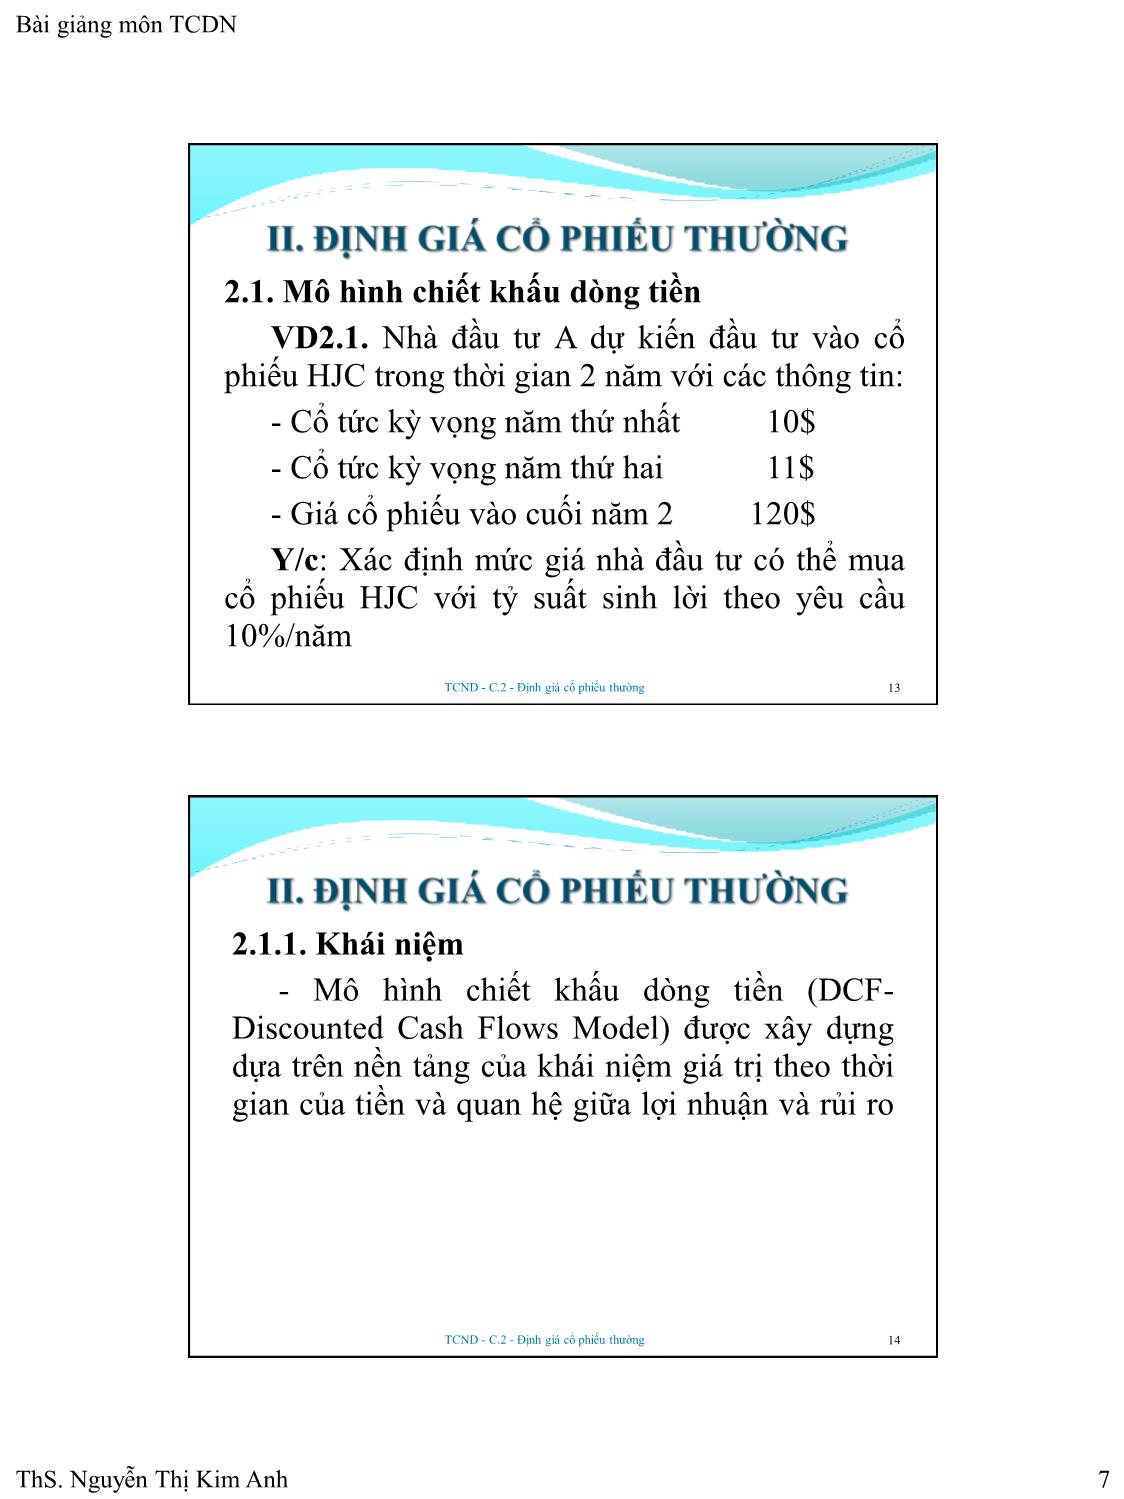 Bài giảng Tài chính doanh nghiệp - Chương 2: Định giá cổ phiếu thường - Nguyễn Thị Kim Anh trang 7